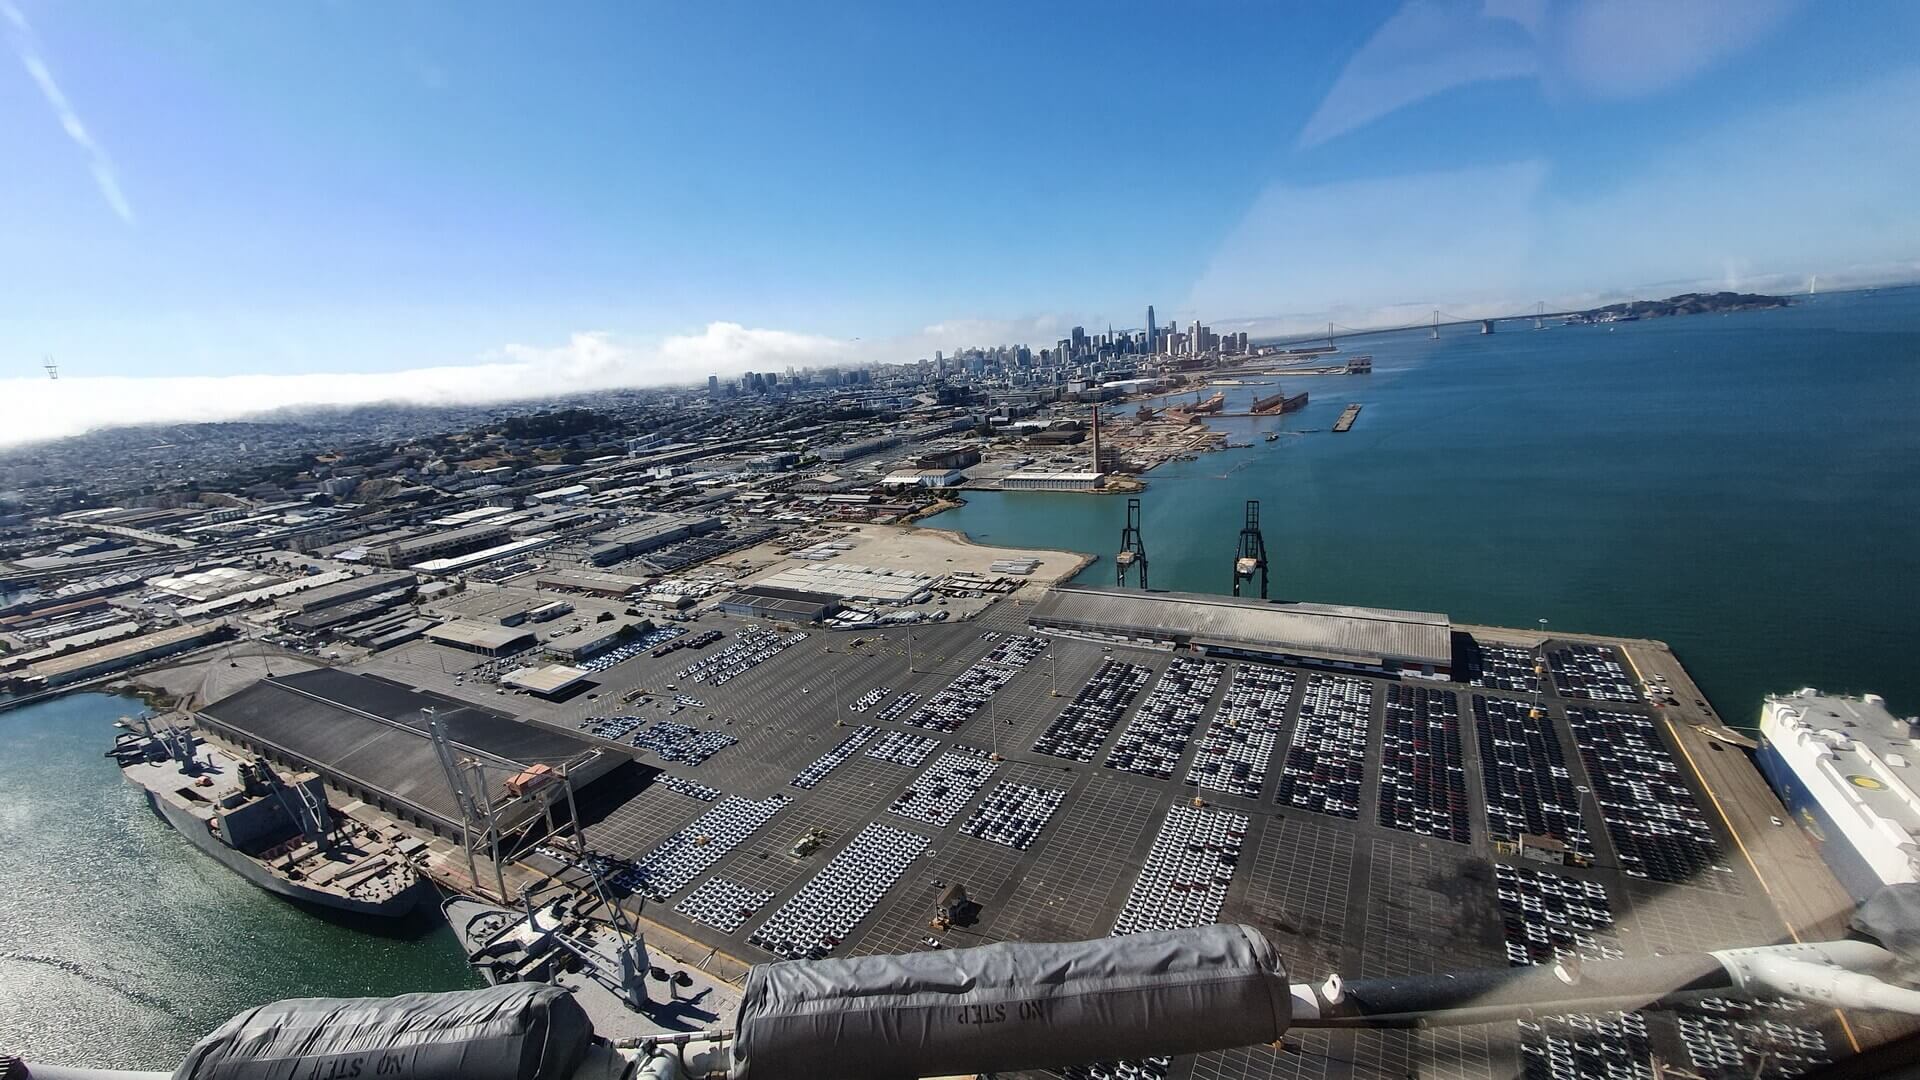 Партия из Tesla Model 3 RHD ожидает погрузки на корабль в порту Сан-Франциско